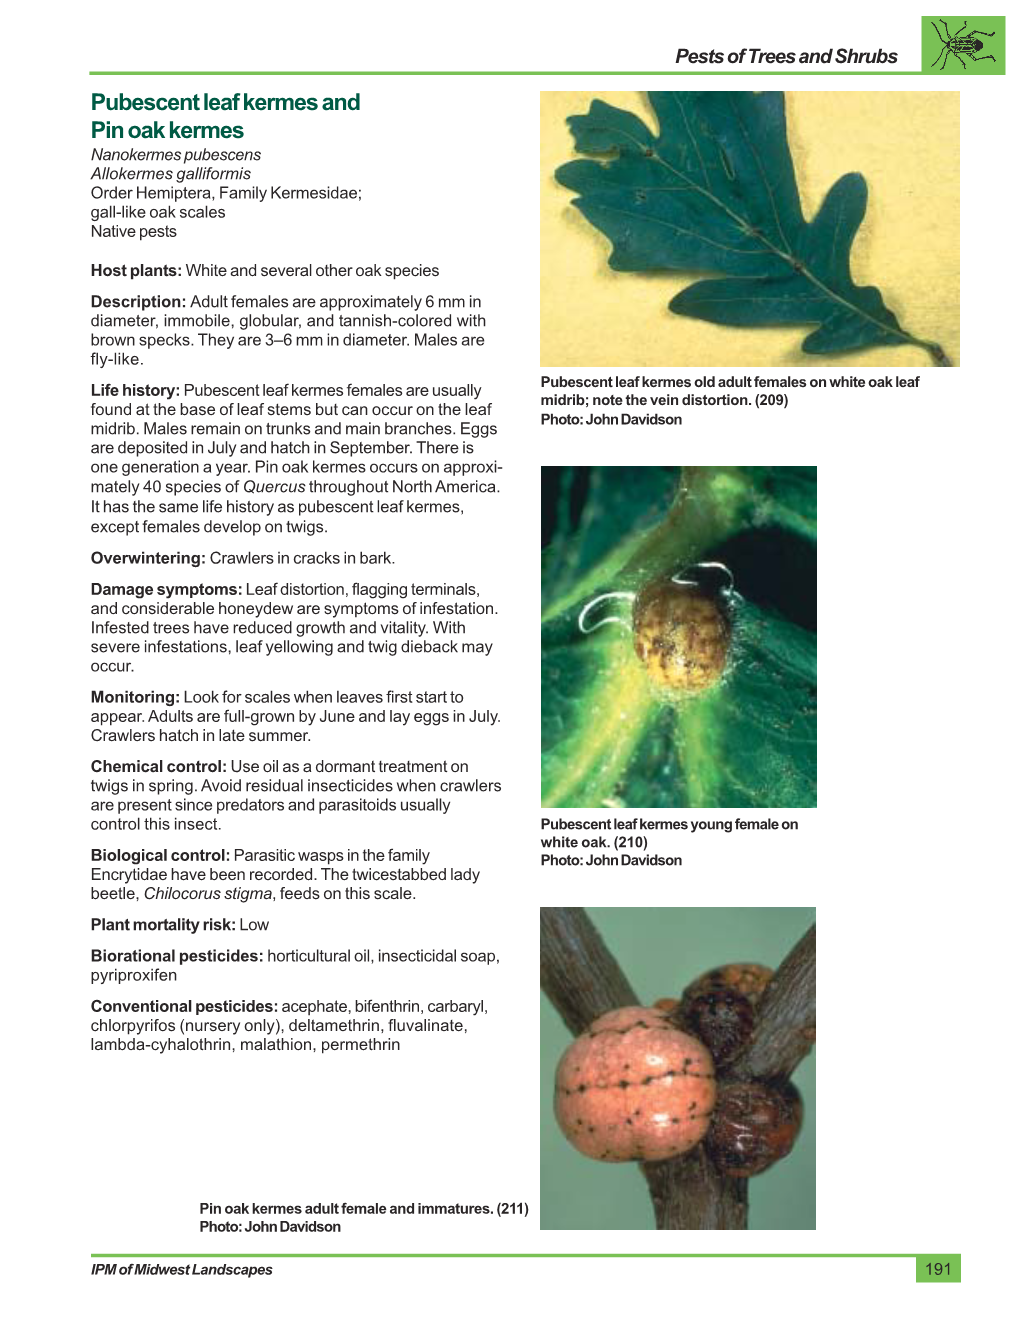 Pubescent Leaf Kermes and Pin Oak Kermes Nanokermes Pubescens Allokermes Galliformis Order Hemiptera, Family Kermesidae; Gall-Like Oak Scales Native Pests